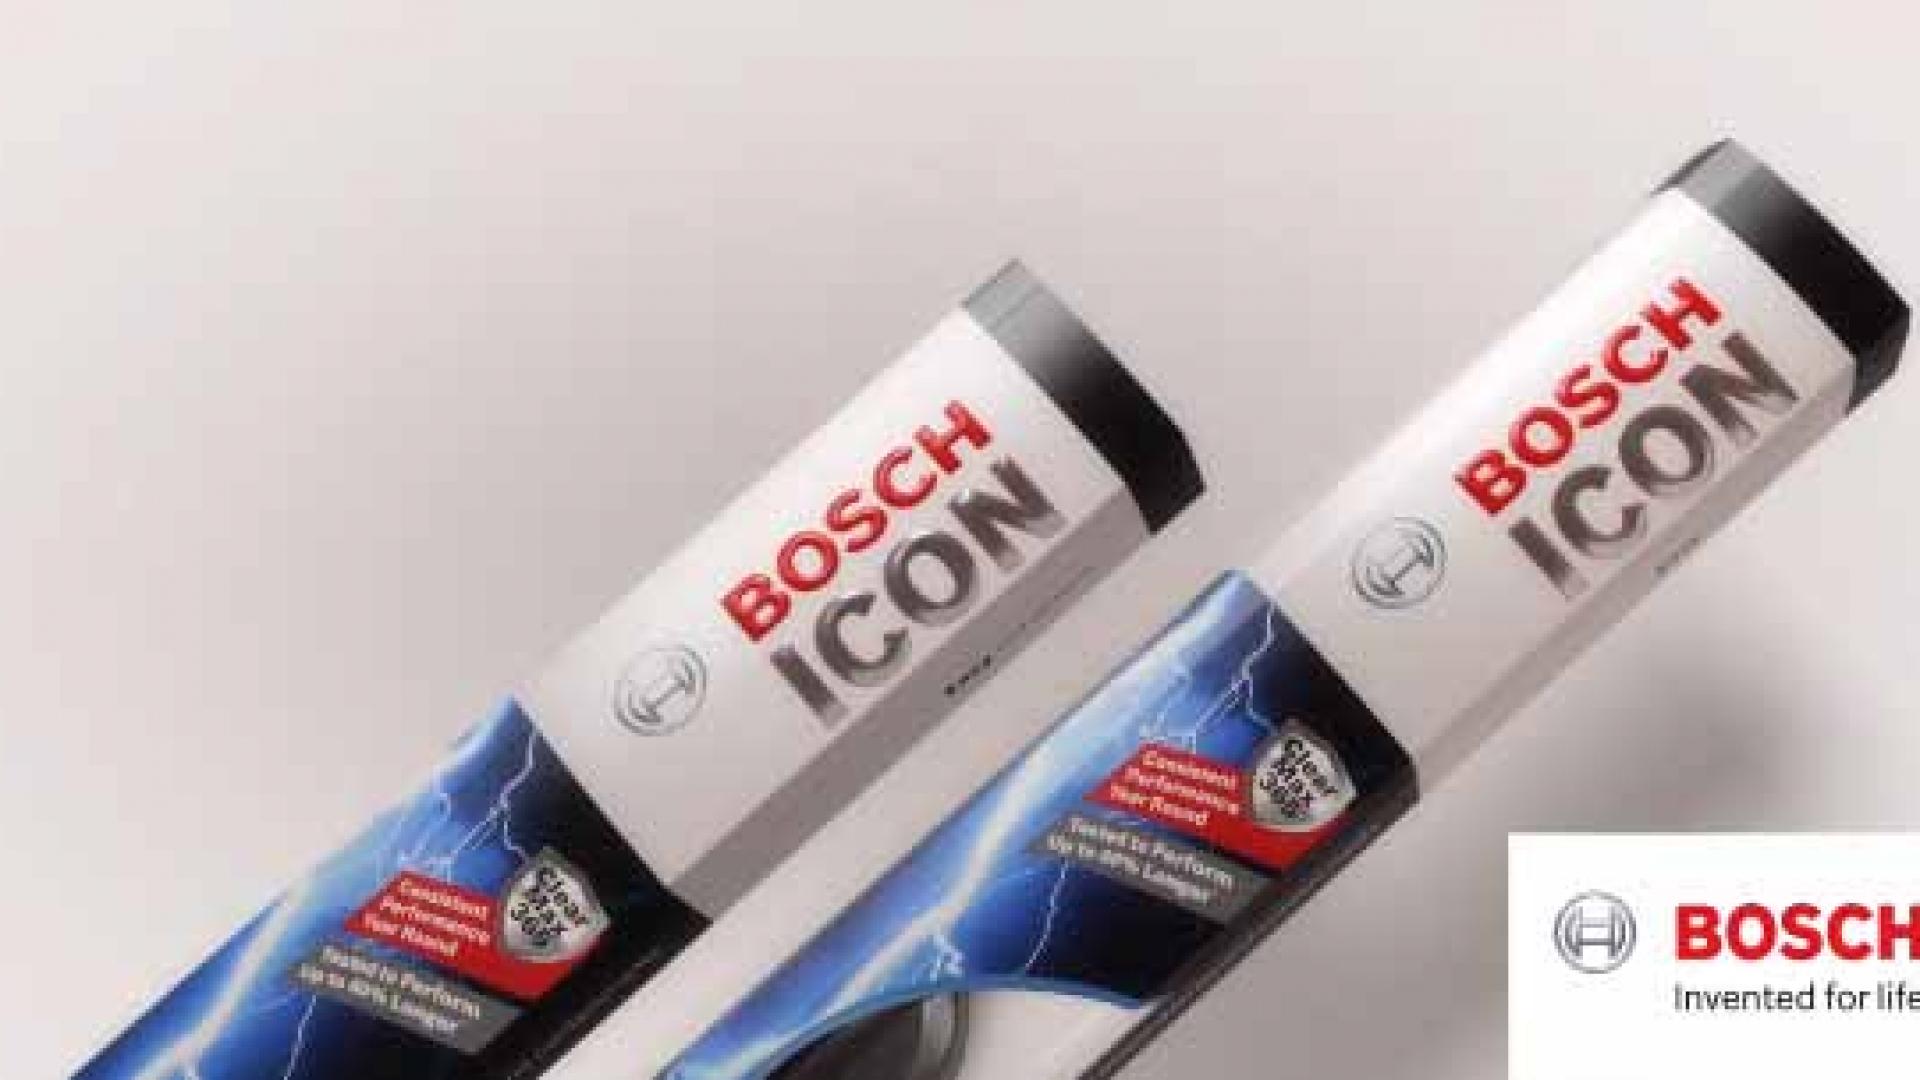 Bosch Icon Wiper Blades Watch Bosch Icon Wiper Blades in action.